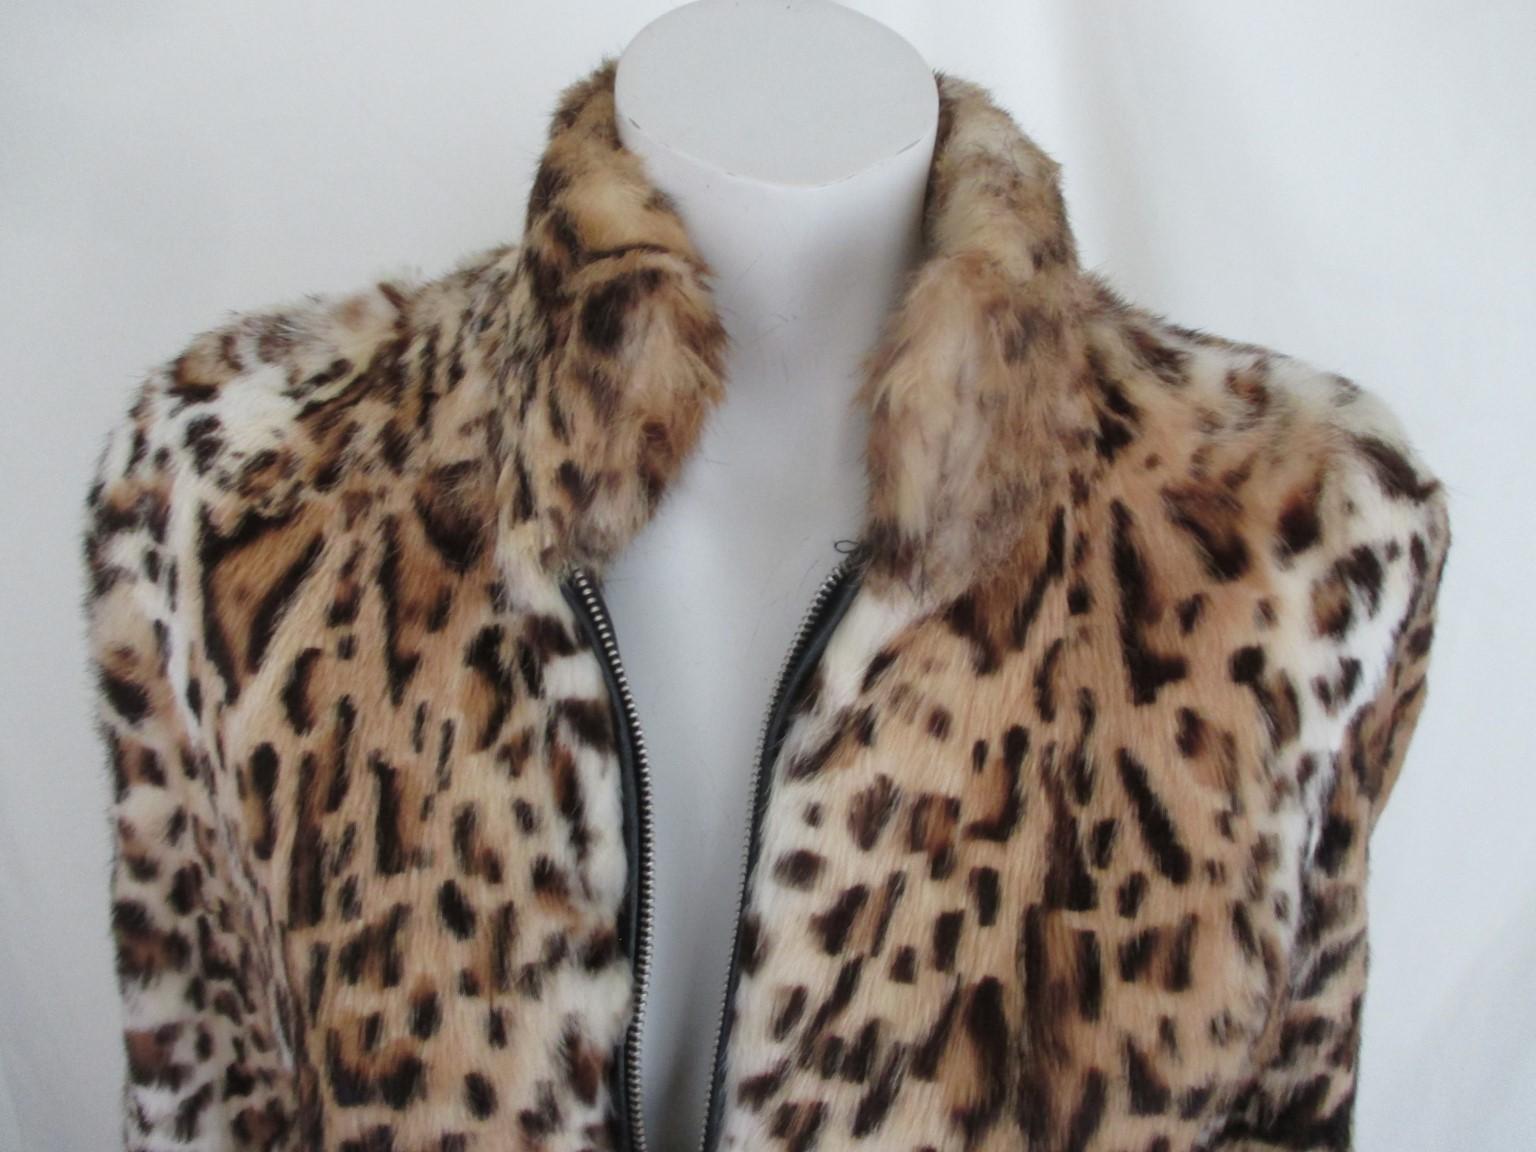 Panther bedruckt Leopard Lapin Vintage Pelz Jacke

Wir bieten weitere exklusive Pelz- und Vintage-Couture-Artikel an, siehe unser Hauptgeschäft

Einzelheiten:
2 Reißverschlusstaschen, schließender Reißverschluss, vollständig gefüttert
Weiches Fell